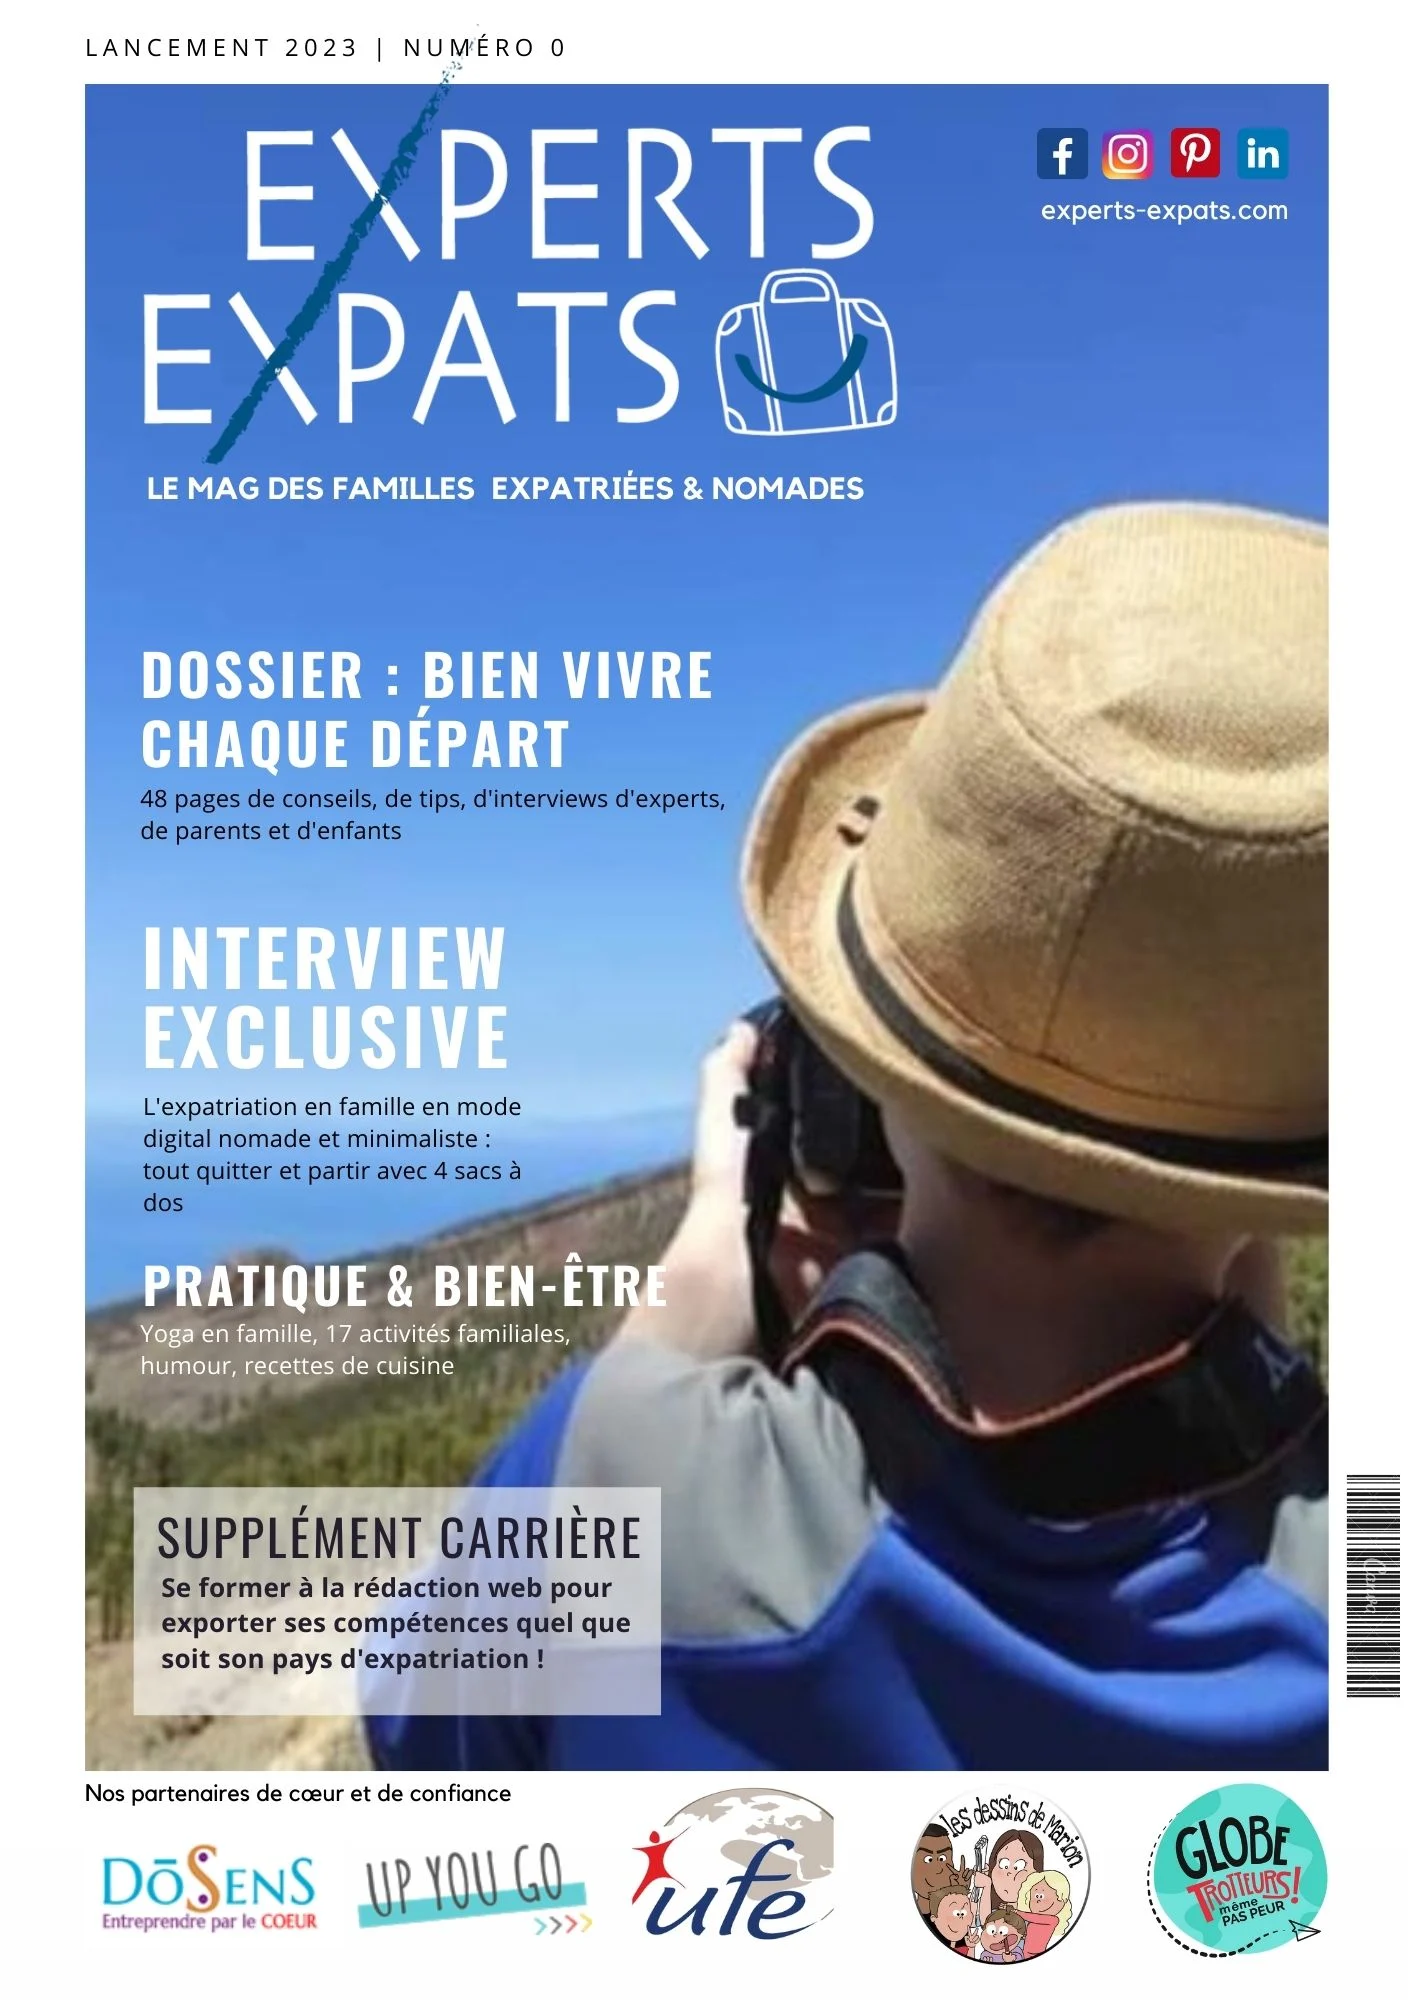 Couverture magazine expatriation